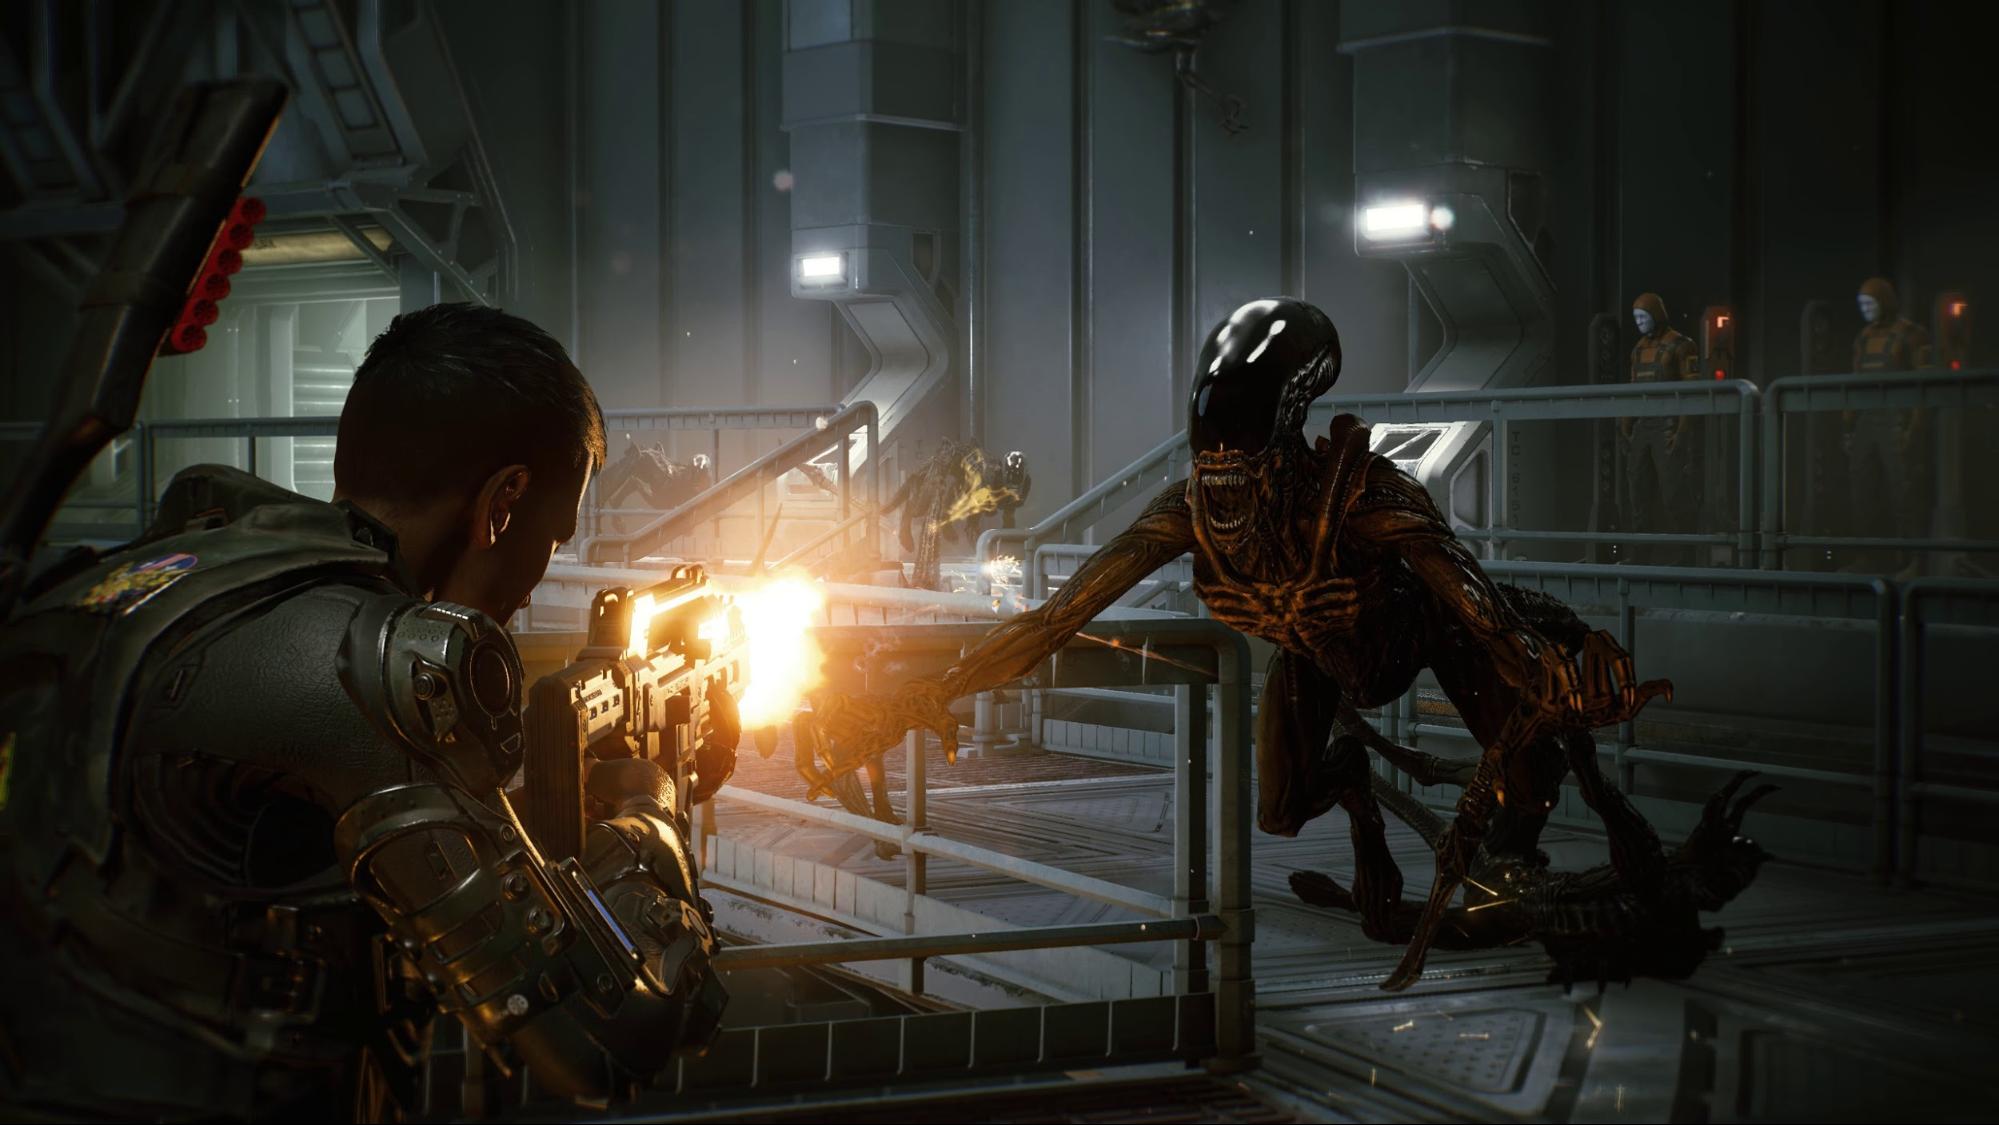 映画『エイリアン』を題材にした協力アクションゲーム『Aliens: Fireteam』が正式発表。3人で協力して20種類以上の無数の敵と戦え_002